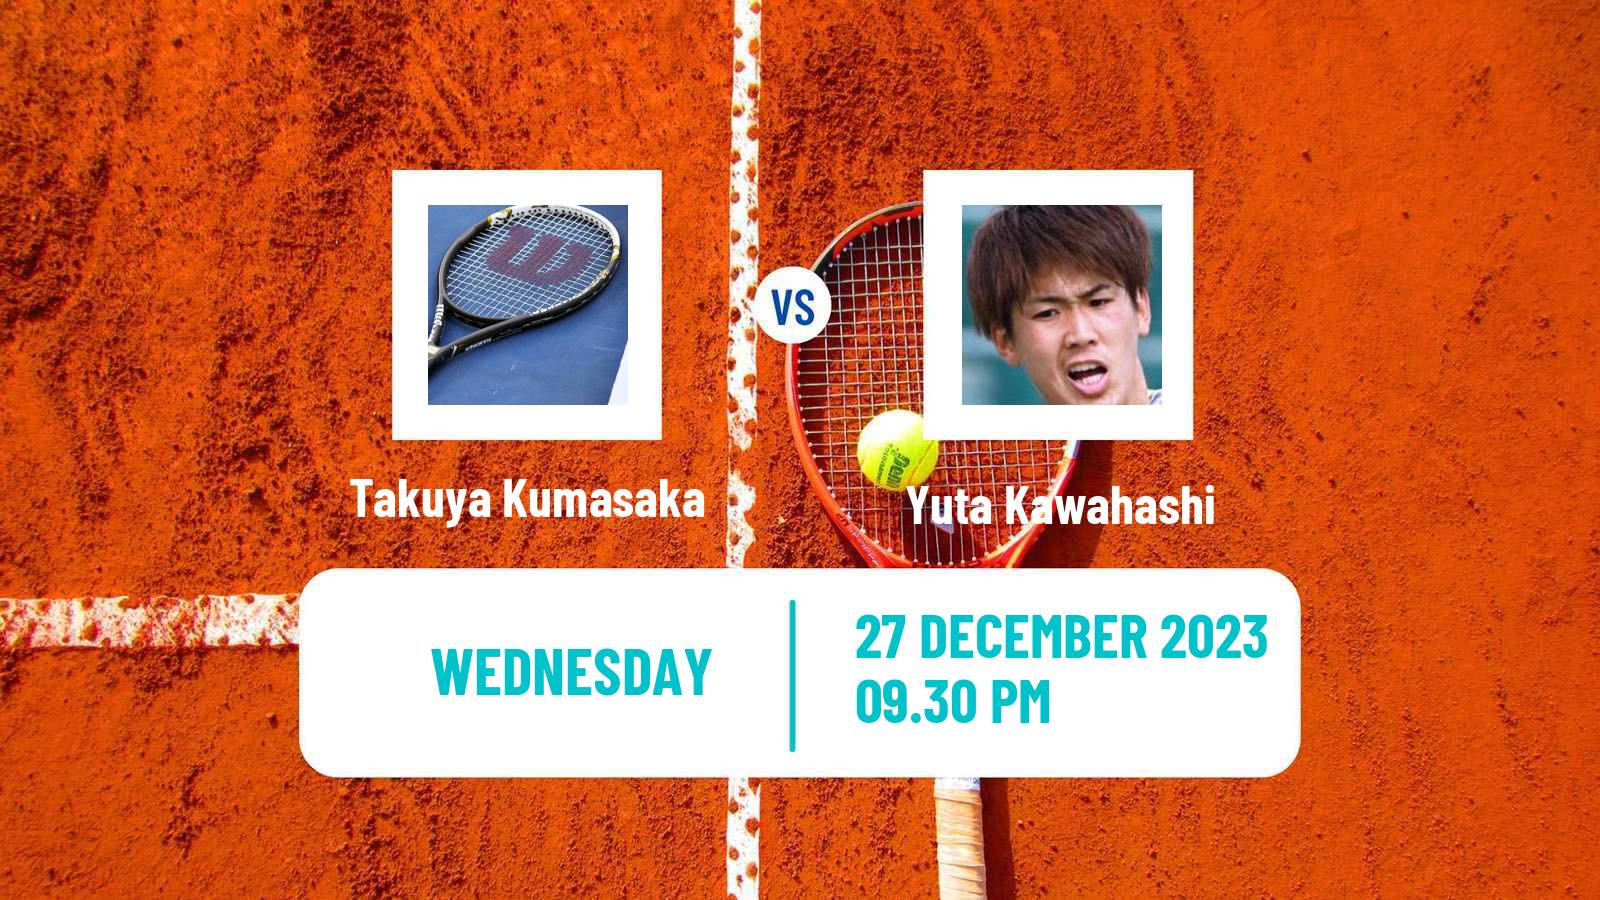 Tennis ITF M15 Yanagawa 2 Men Takuya Kumasaka - Yuta Kawahashi